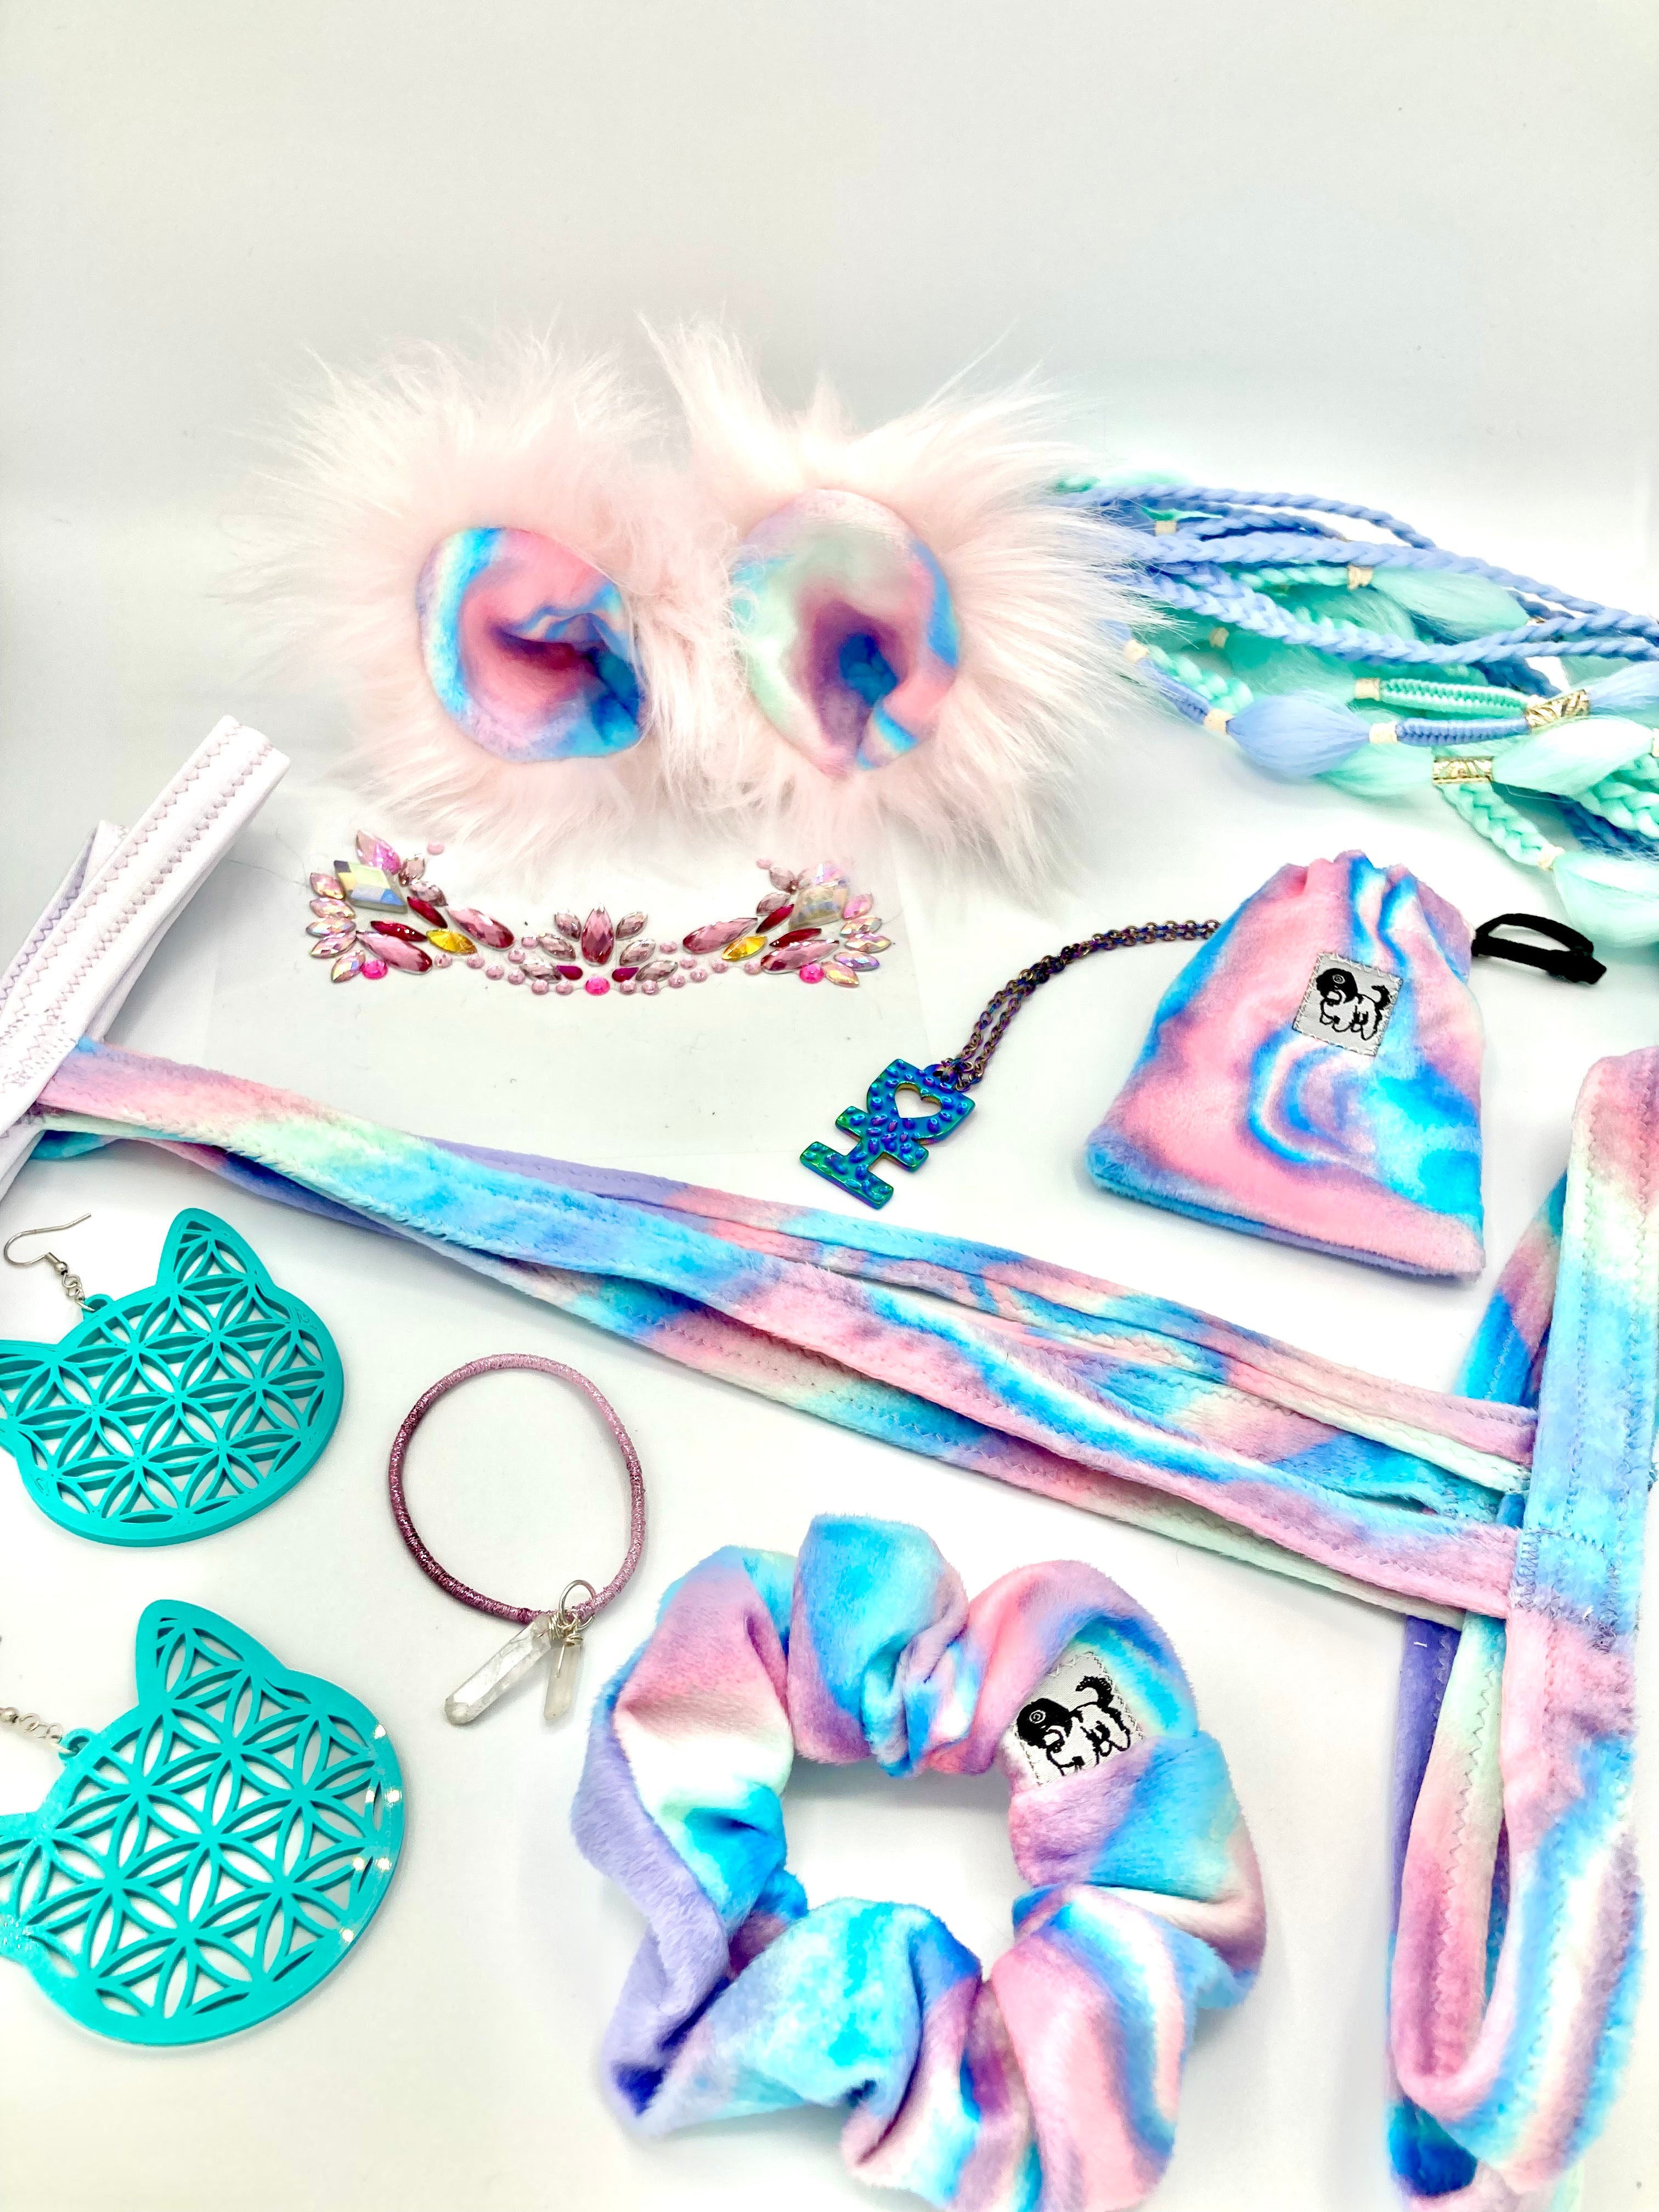 Cotton Candy Skies Multi Purpose Bag (Pet)